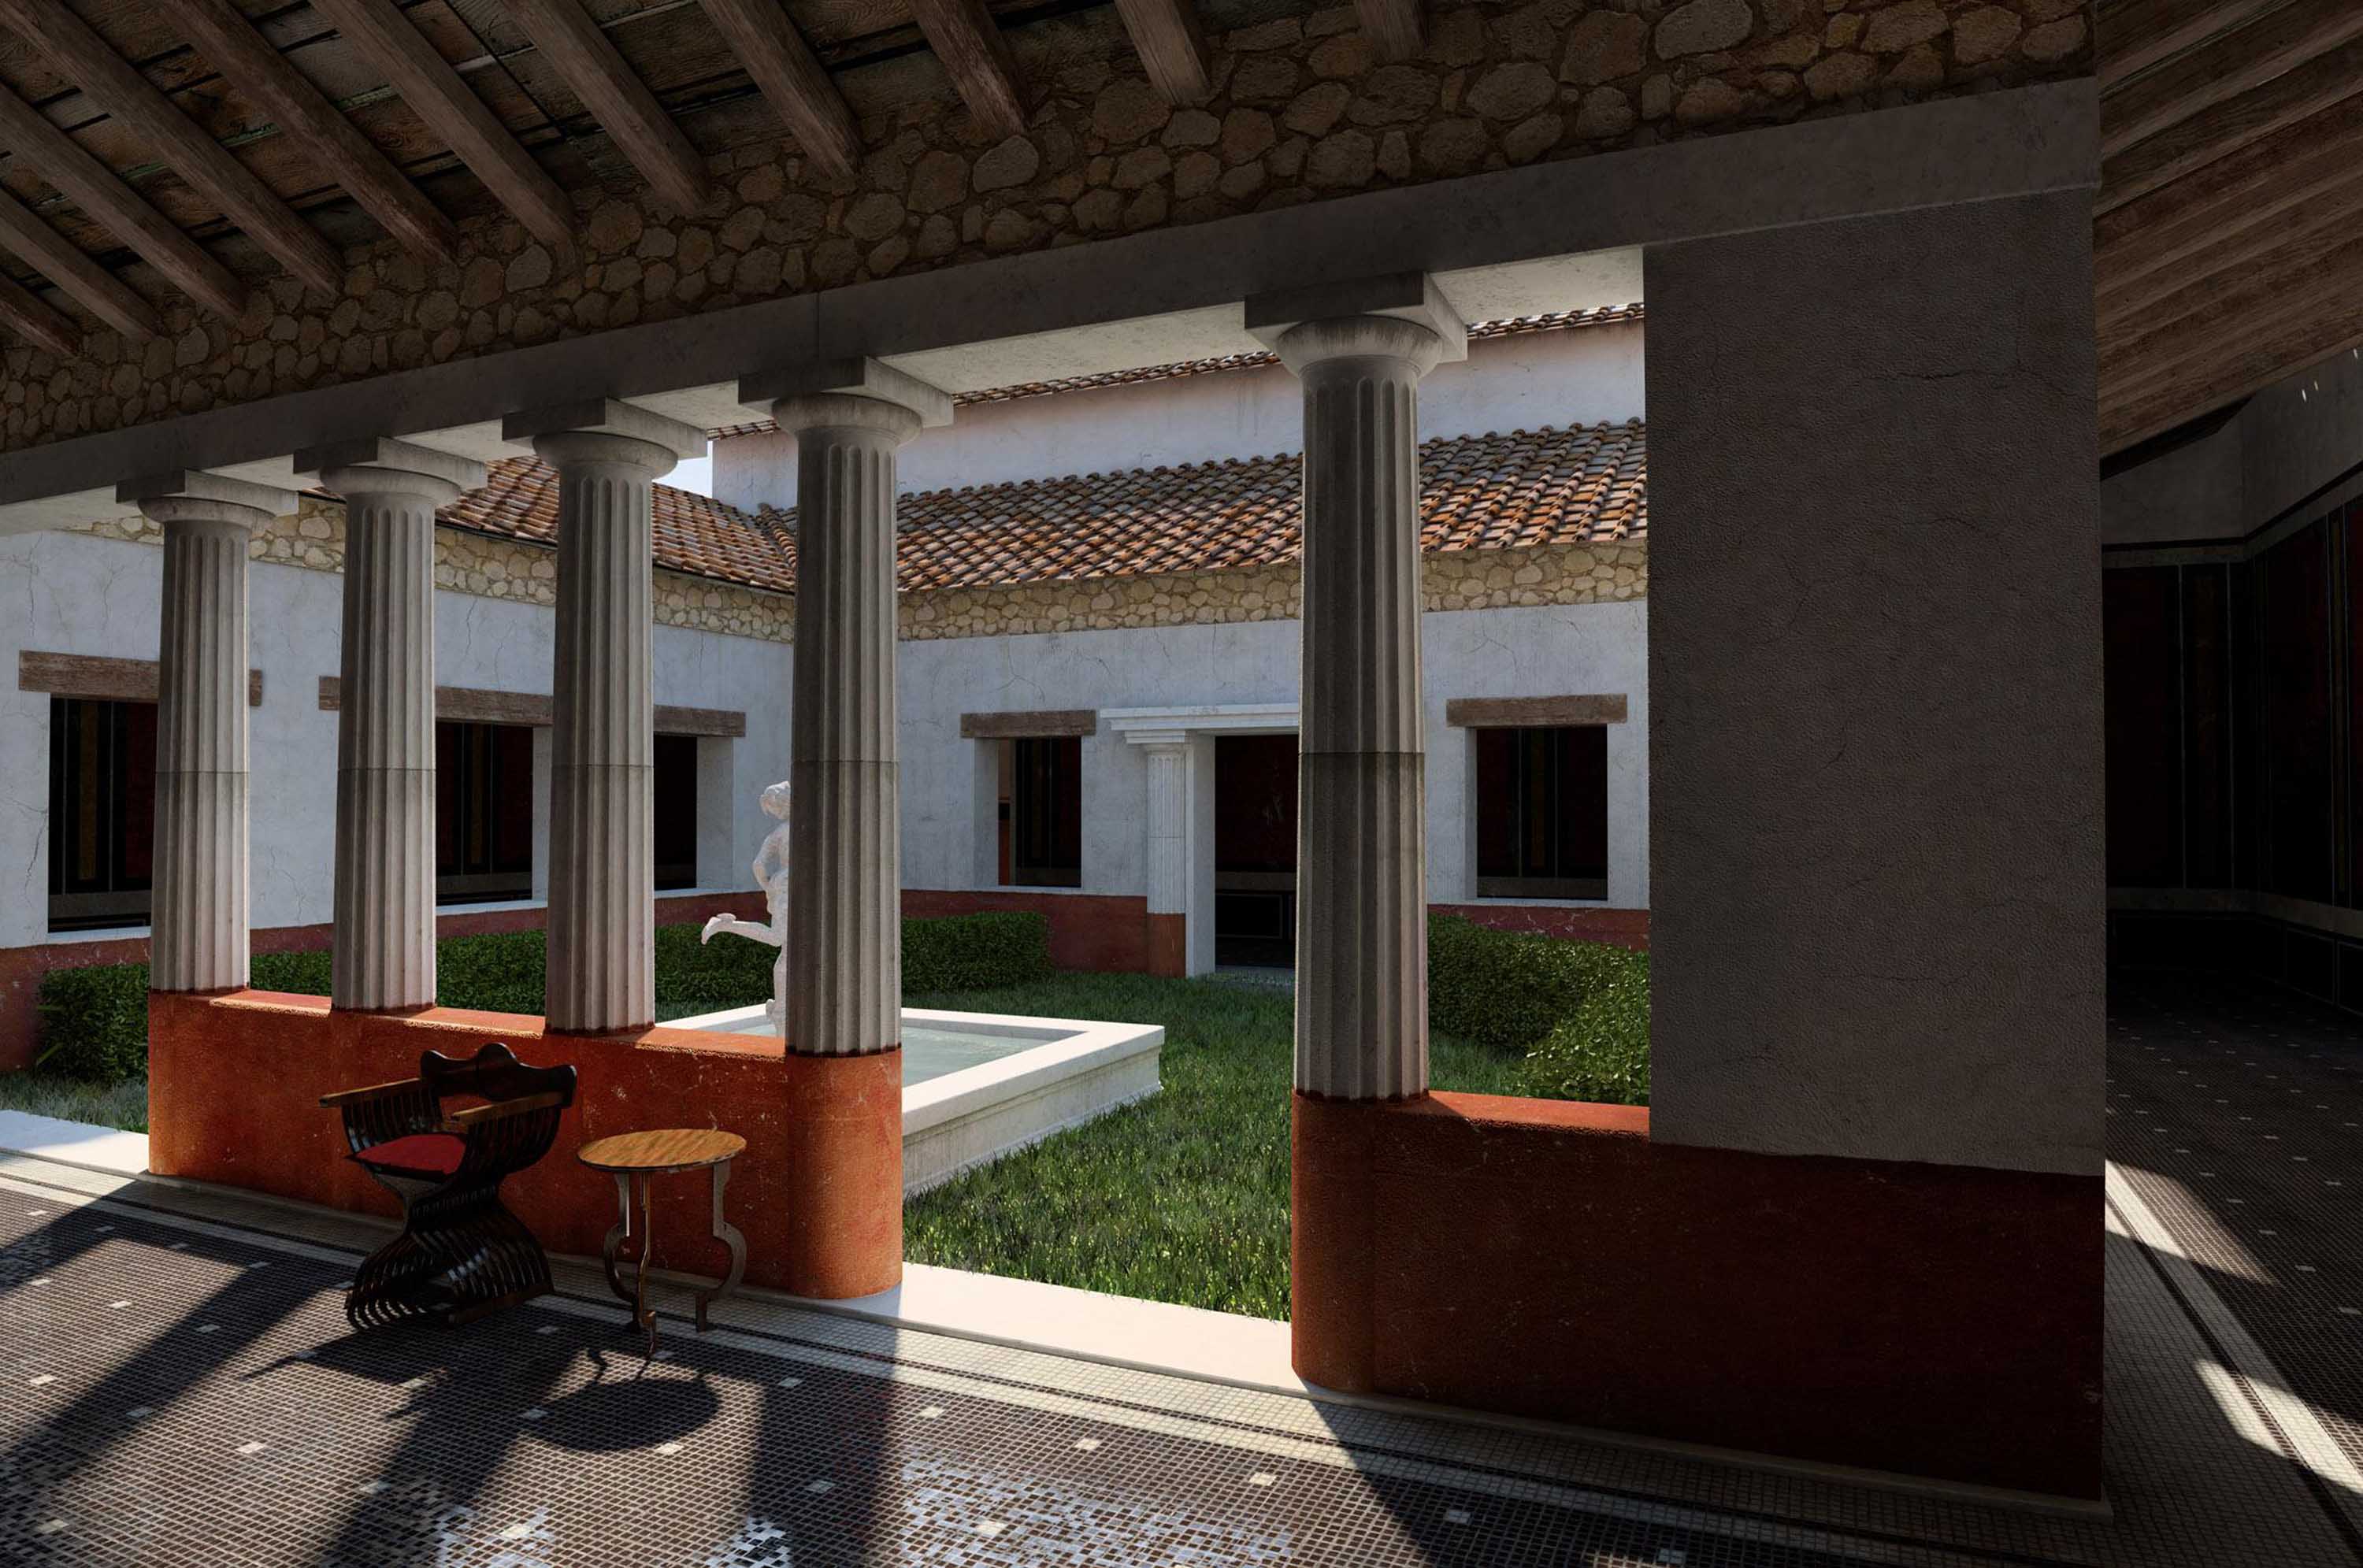 Ricostruzione virtuale di uno scorcio dell'interno  della domus di Tito Macro. (Aquileia 14/05/13)